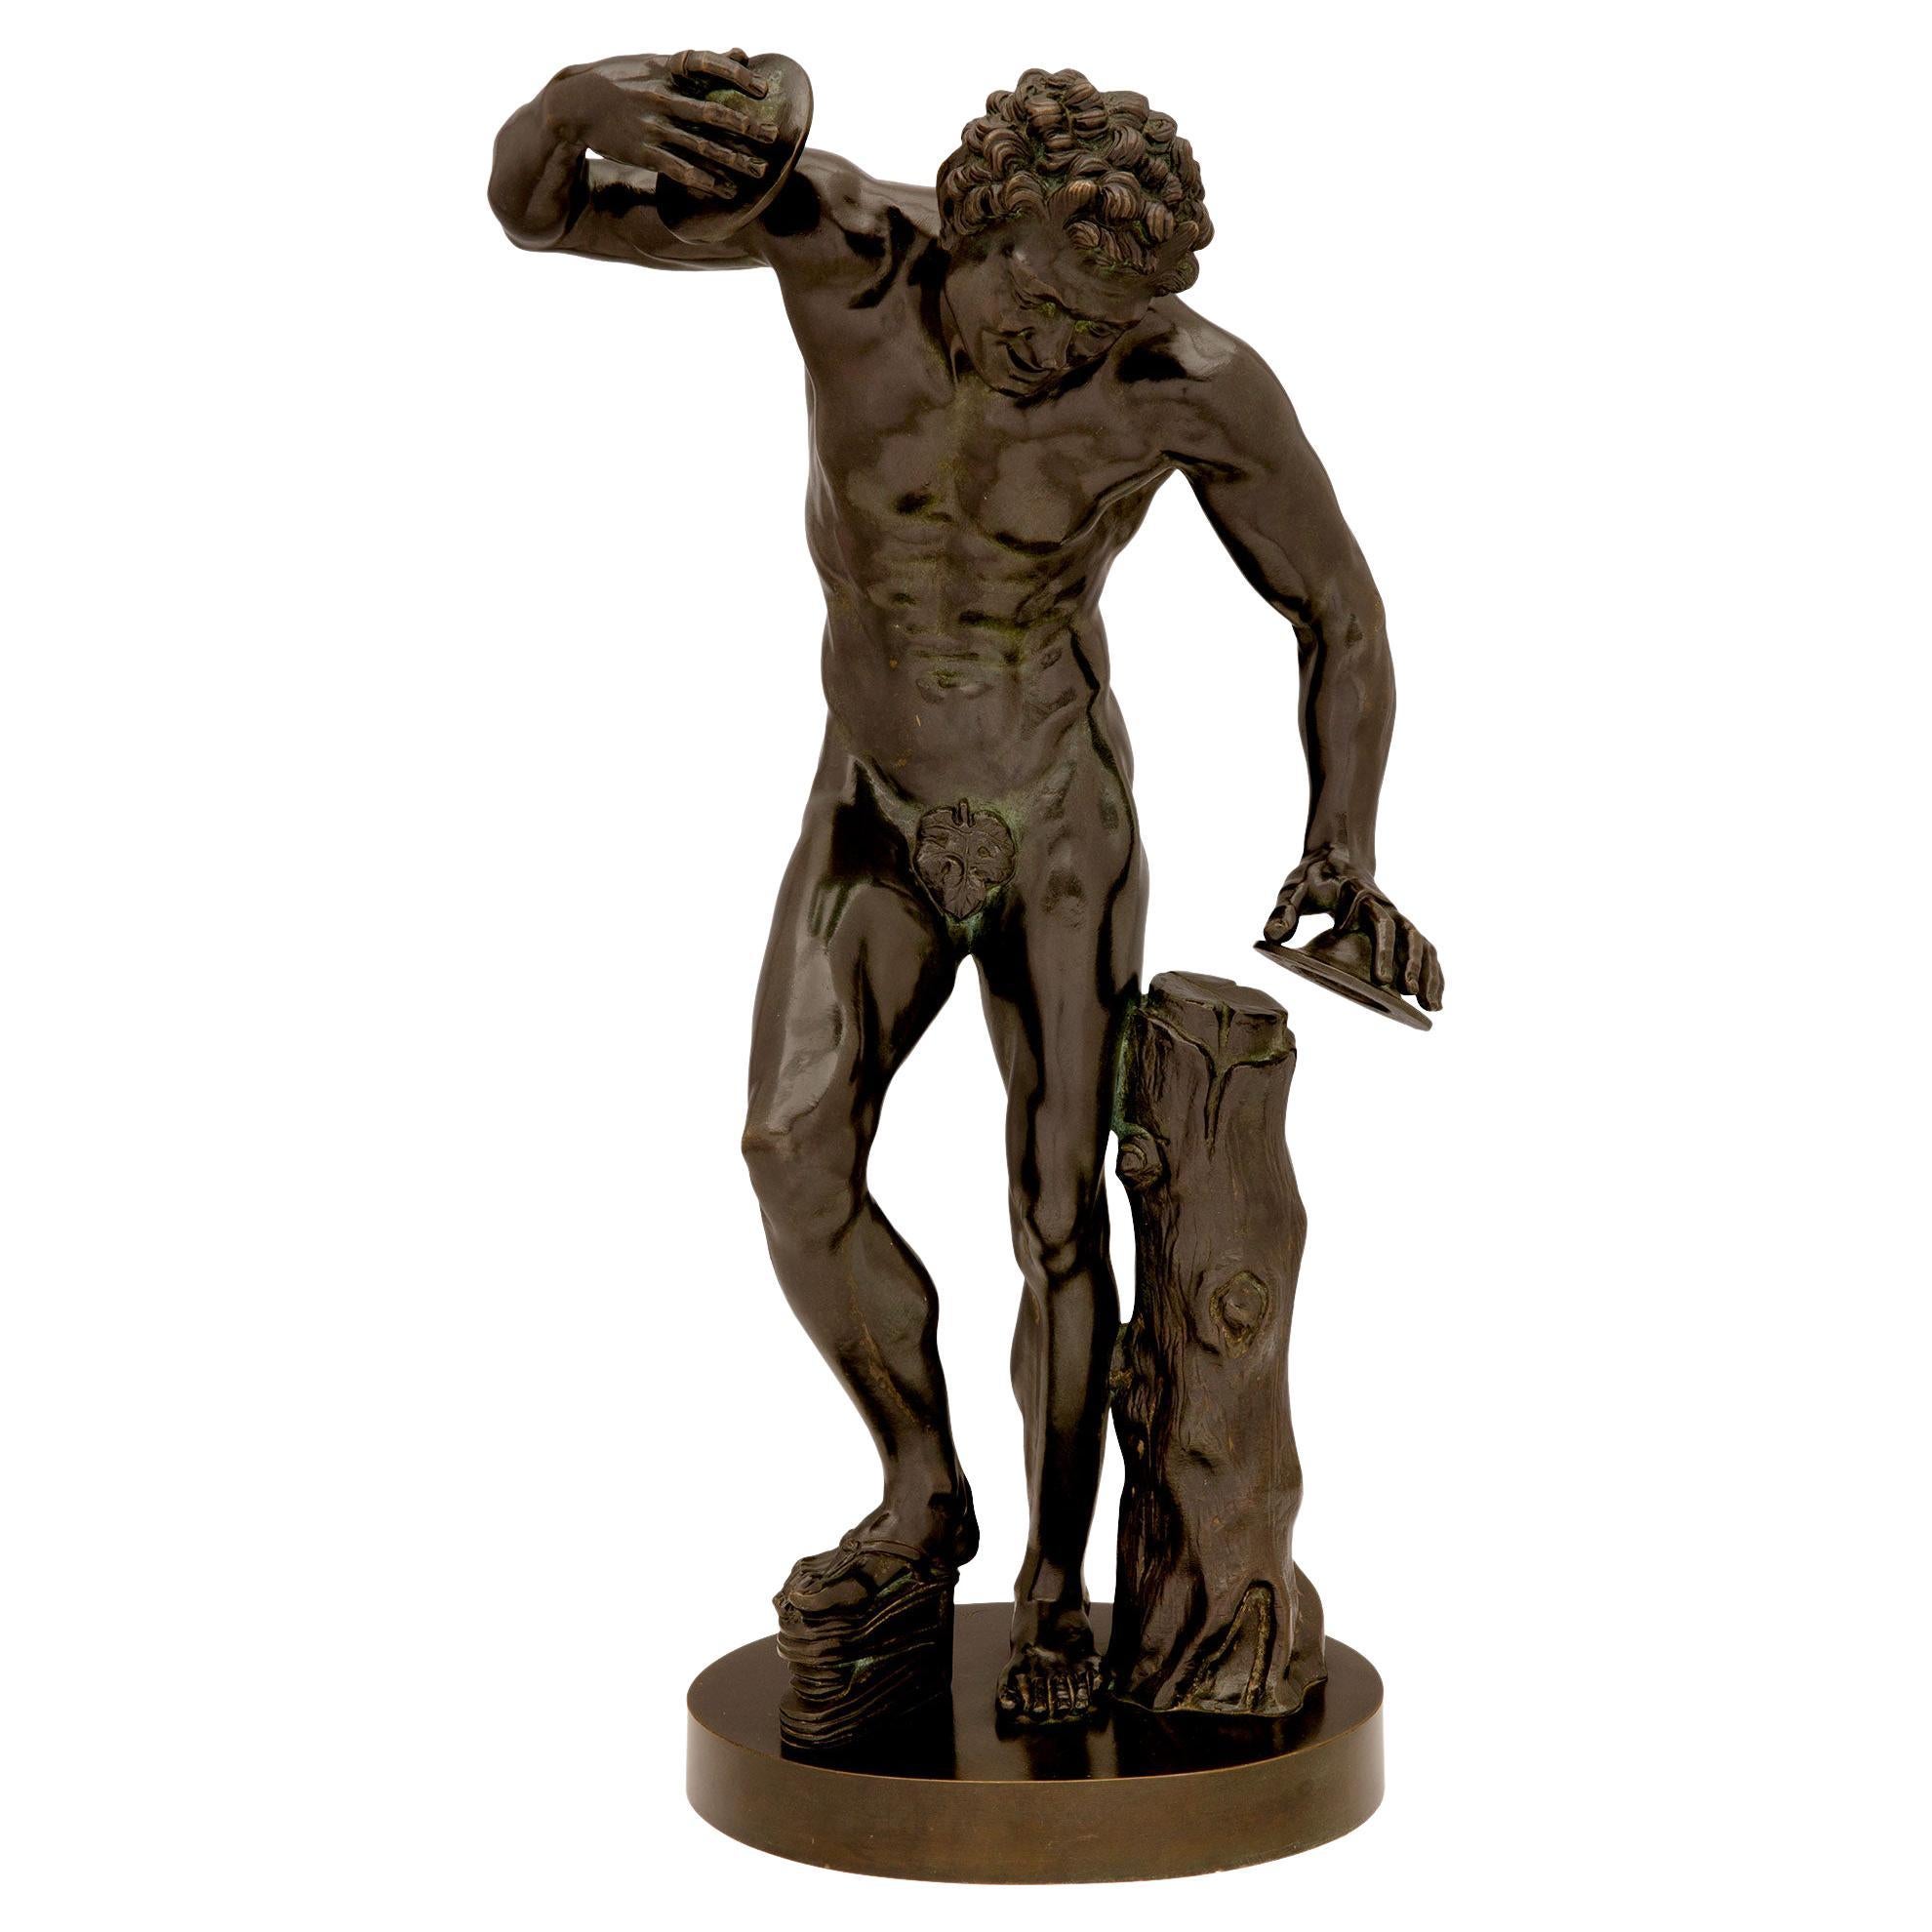 Kontinentale patinierte Bronzestatue eines tanzenden Fauns mit Zimbeln aus dem 19. Jahrhundert